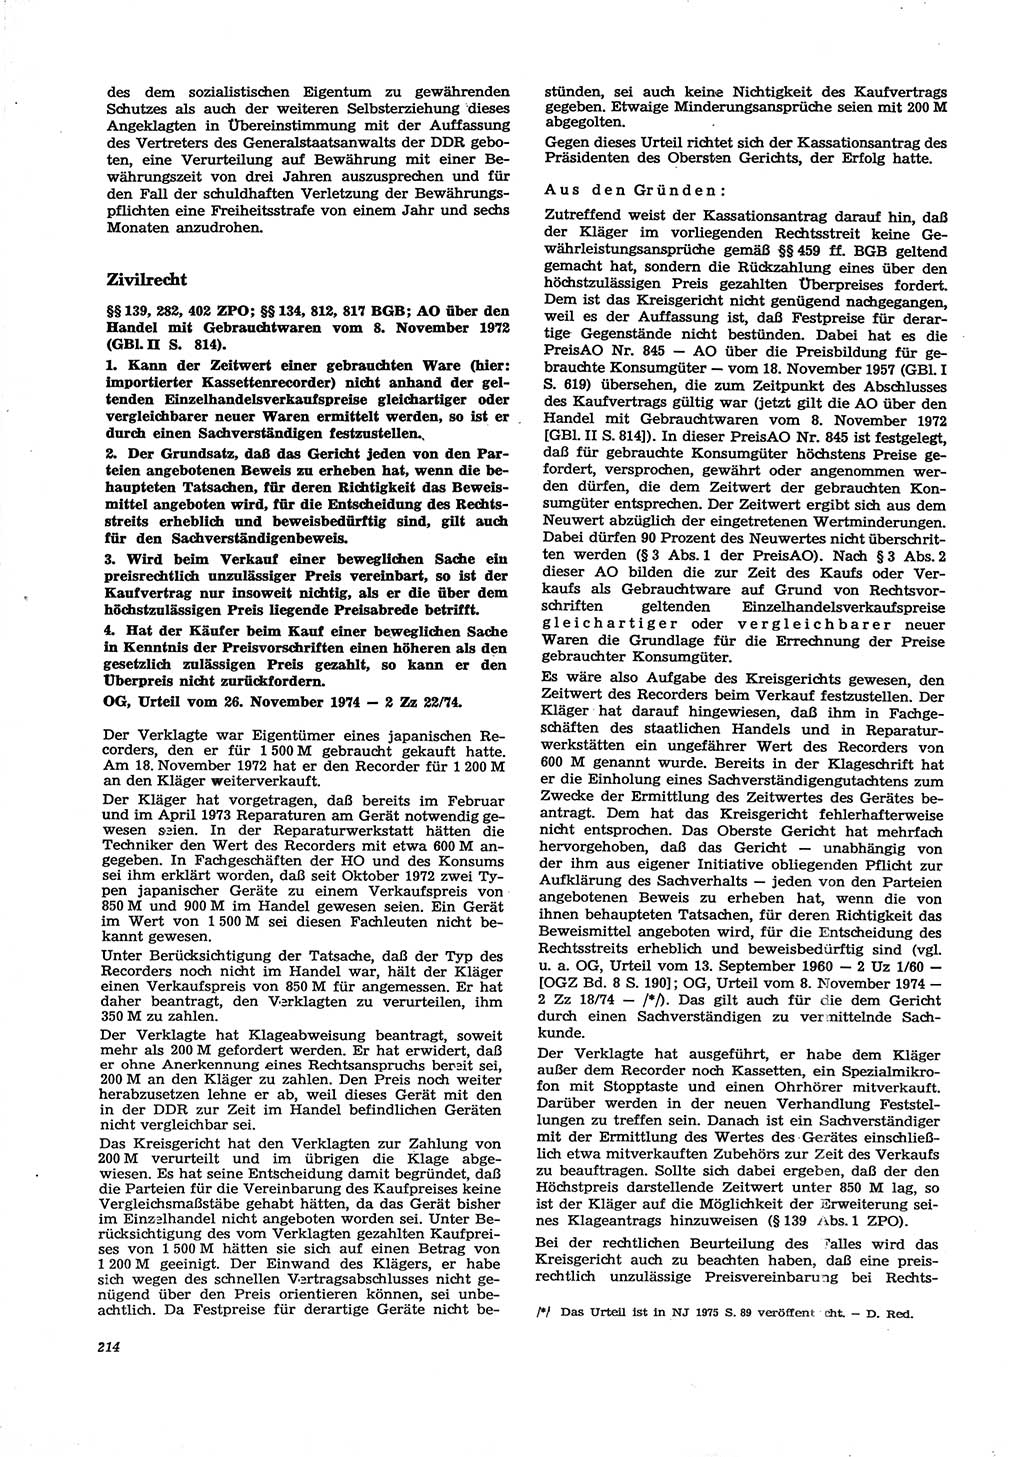 Neue Justiz (NJ), Zeitschrift für Recht und Rechtswissenschaft [Deutsche Demokratische Republik (DDR)], 29. Jahrgang 1975, Seite 214 (NJ DDR 1975, S. 214)